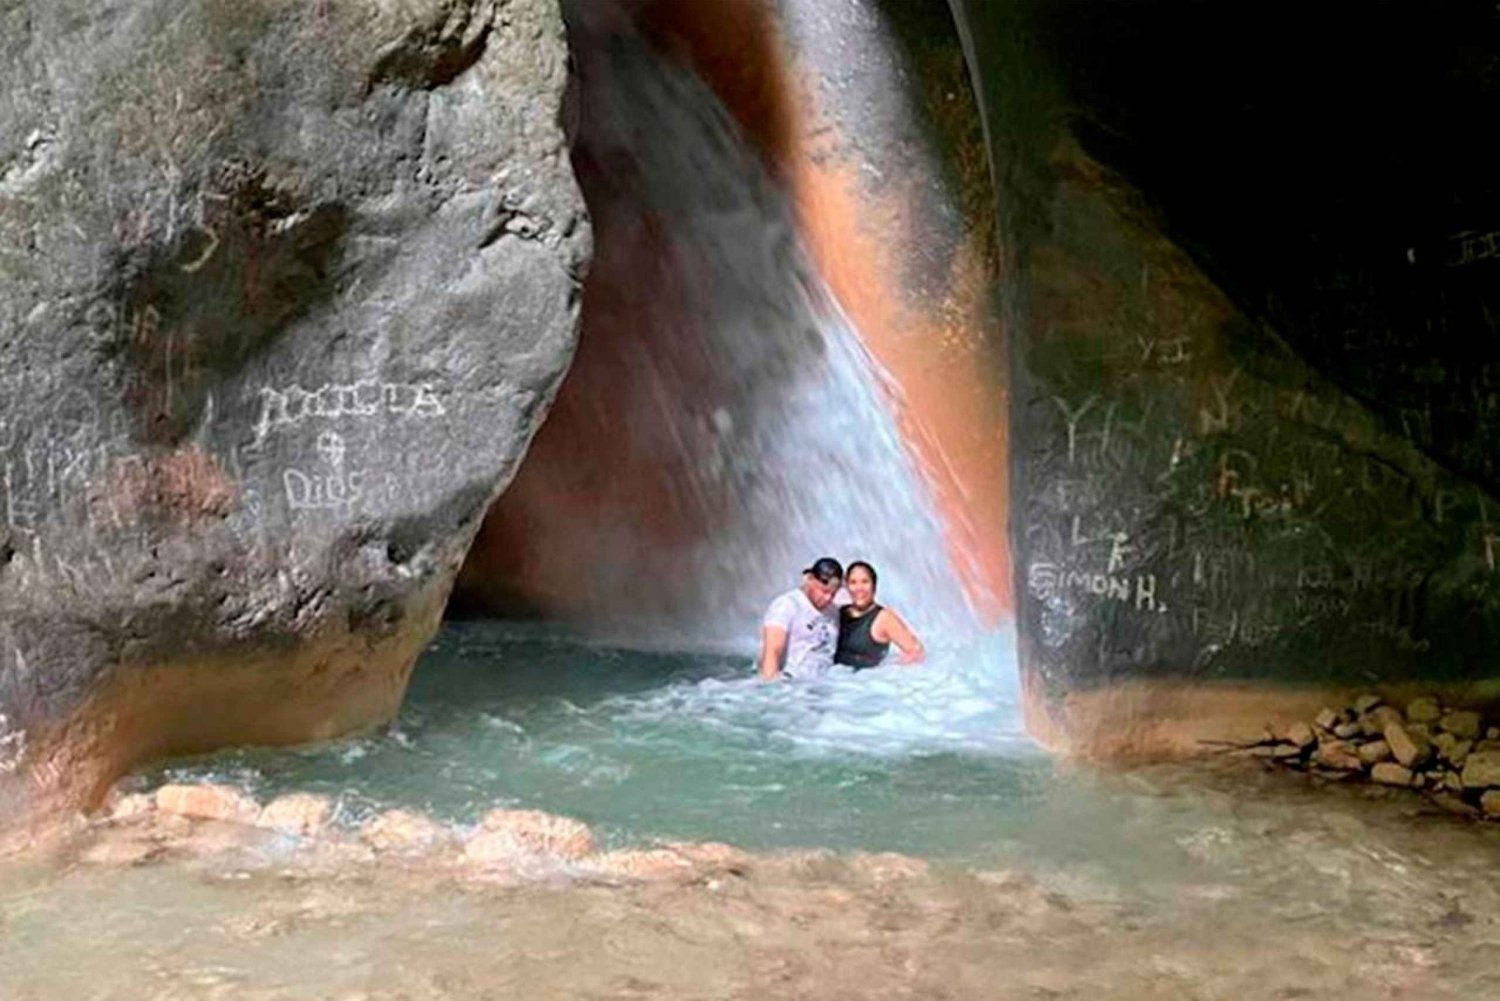 Tour TODO INCLUIDO en Sendero Acuático Cueva de la Virgen